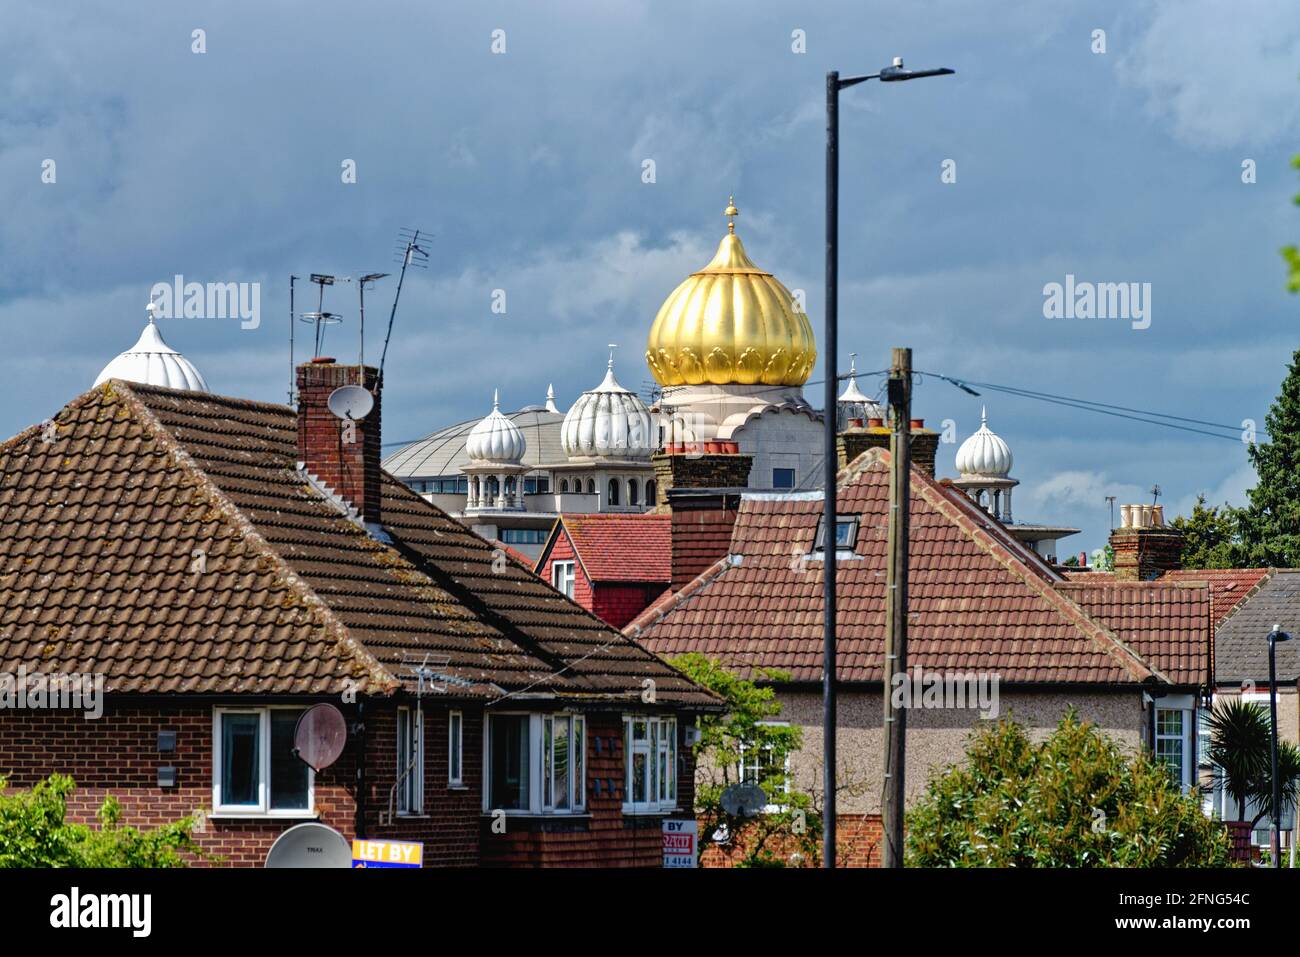 La cupola dorata del Siri Guru Singh Sabha Gurdwara tempio che domina lo skyline di Southall London, quartiere di Ealing Inghilterra Regno Unito Foto Stock